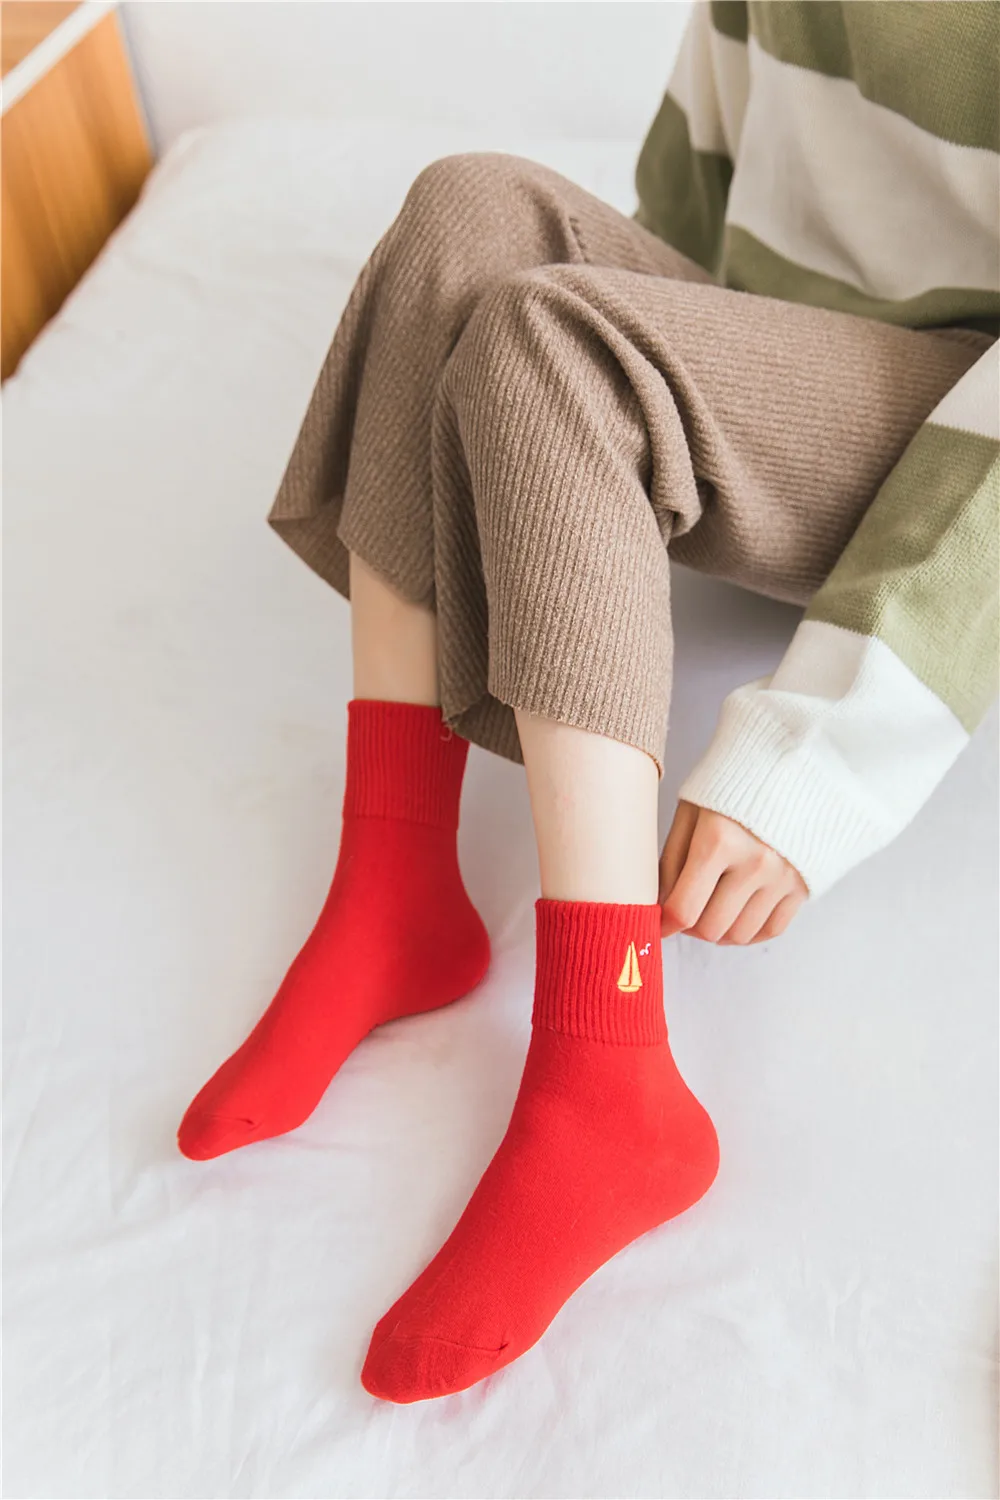 Женские носки, хлопковые, китайские, характерные, красные, на удачу, классические, с вышивкой, с рисунком мыши, фу, женские носки, символизируют хорошие пожелания